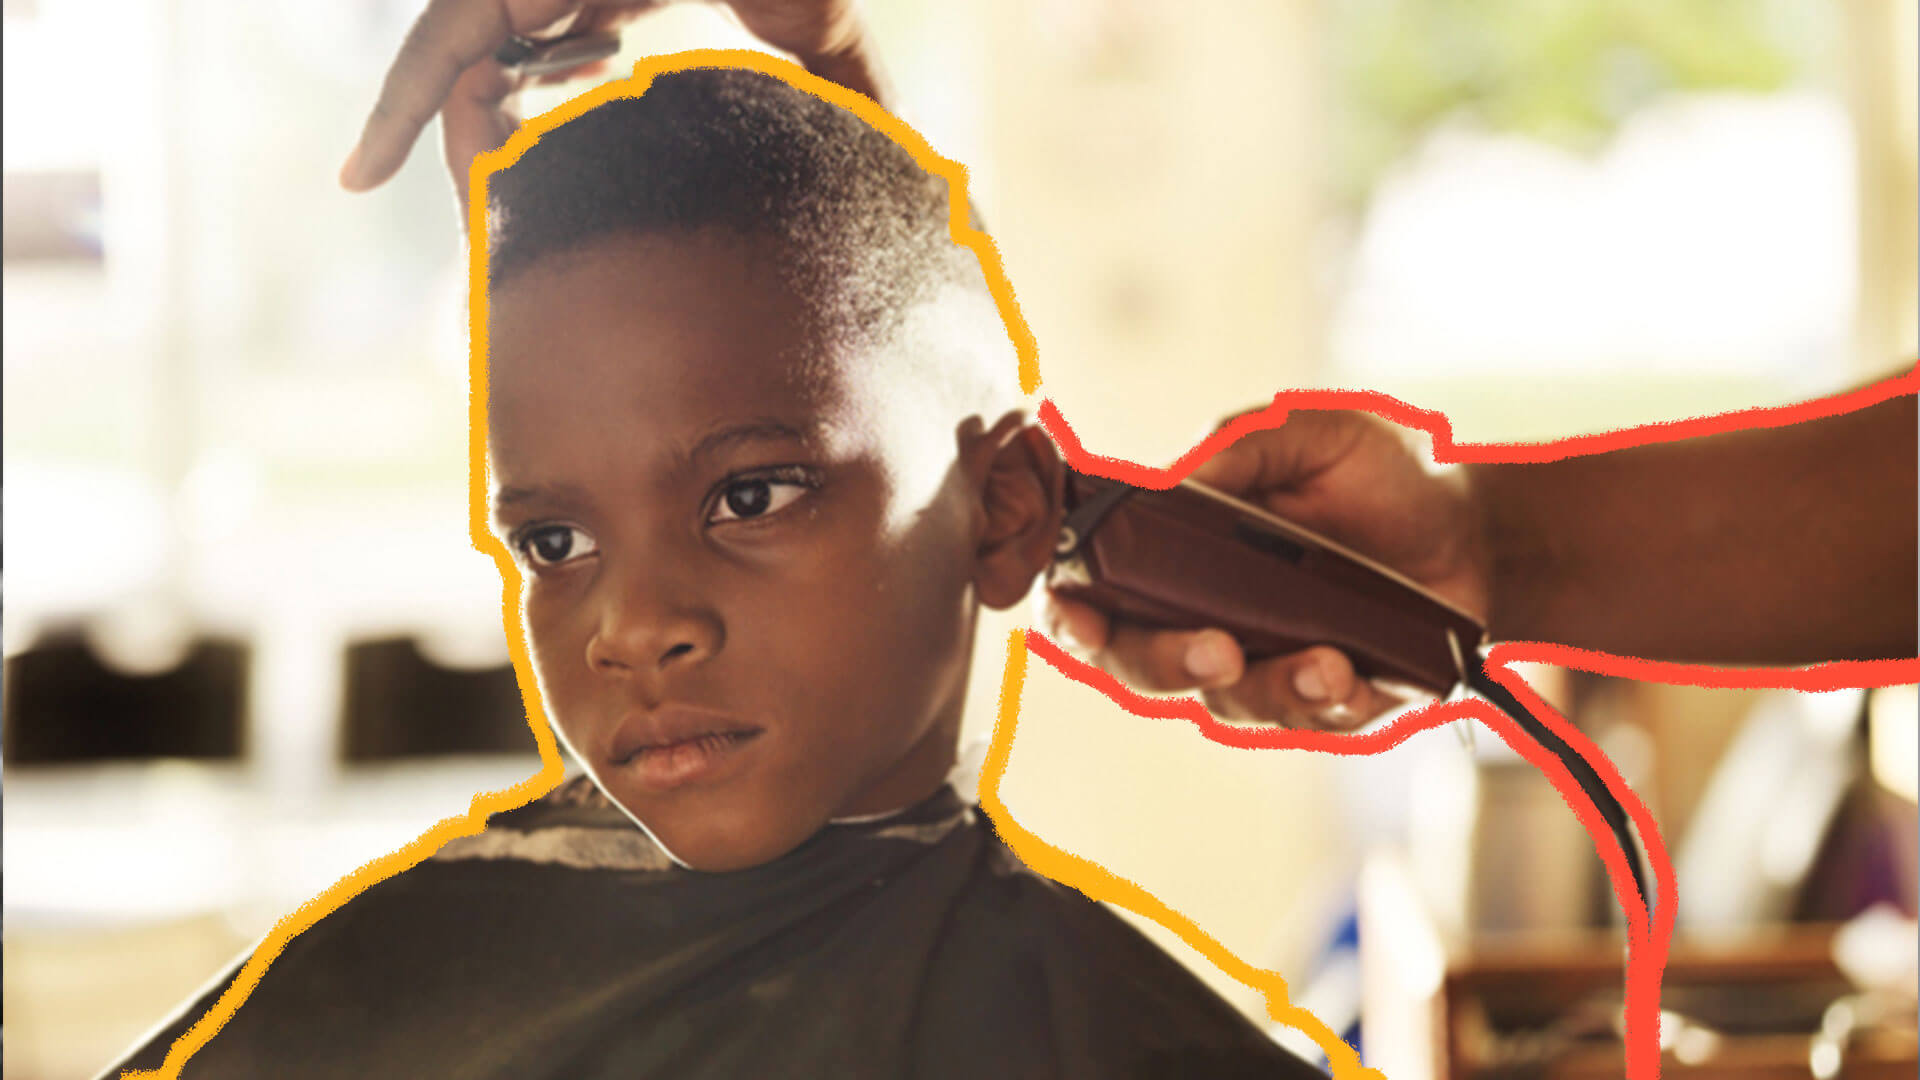 Rosto de menino negro com o cabelo curto sendo cortado por uma máquina, Aparece somente a mão de quem corta.